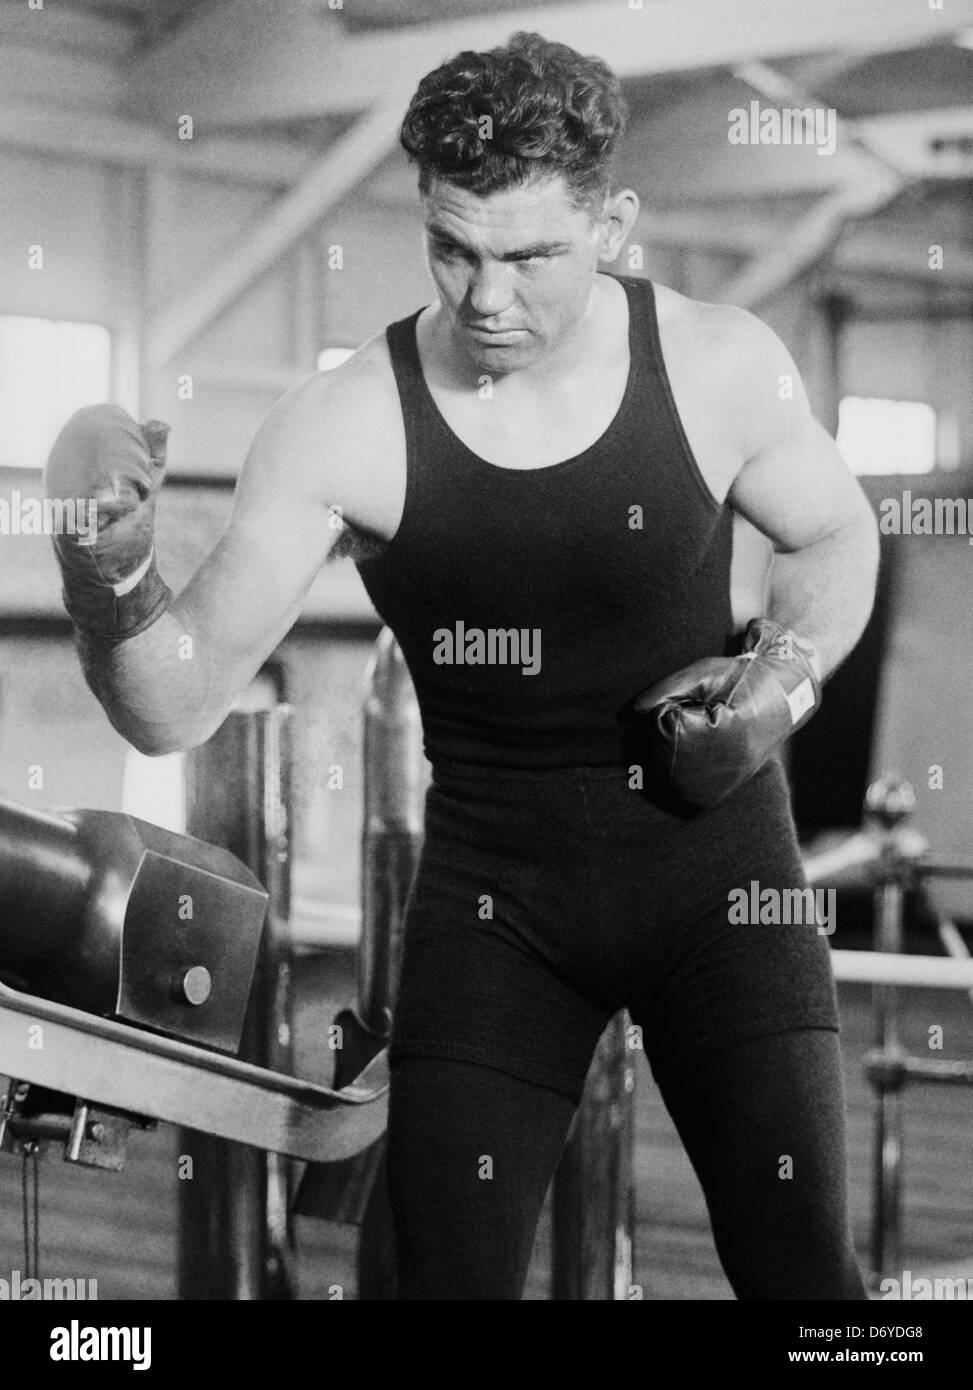 Oldtimer-Foto von Boxer Jack Dempsey (1895 – 1983) – Dempsey, bekannt als „der Manassa Mauler“, war von 1919 bis 1926 Weltmeister im Schwergewicht. Foto ca. 1920 – 1925. Stockfoto